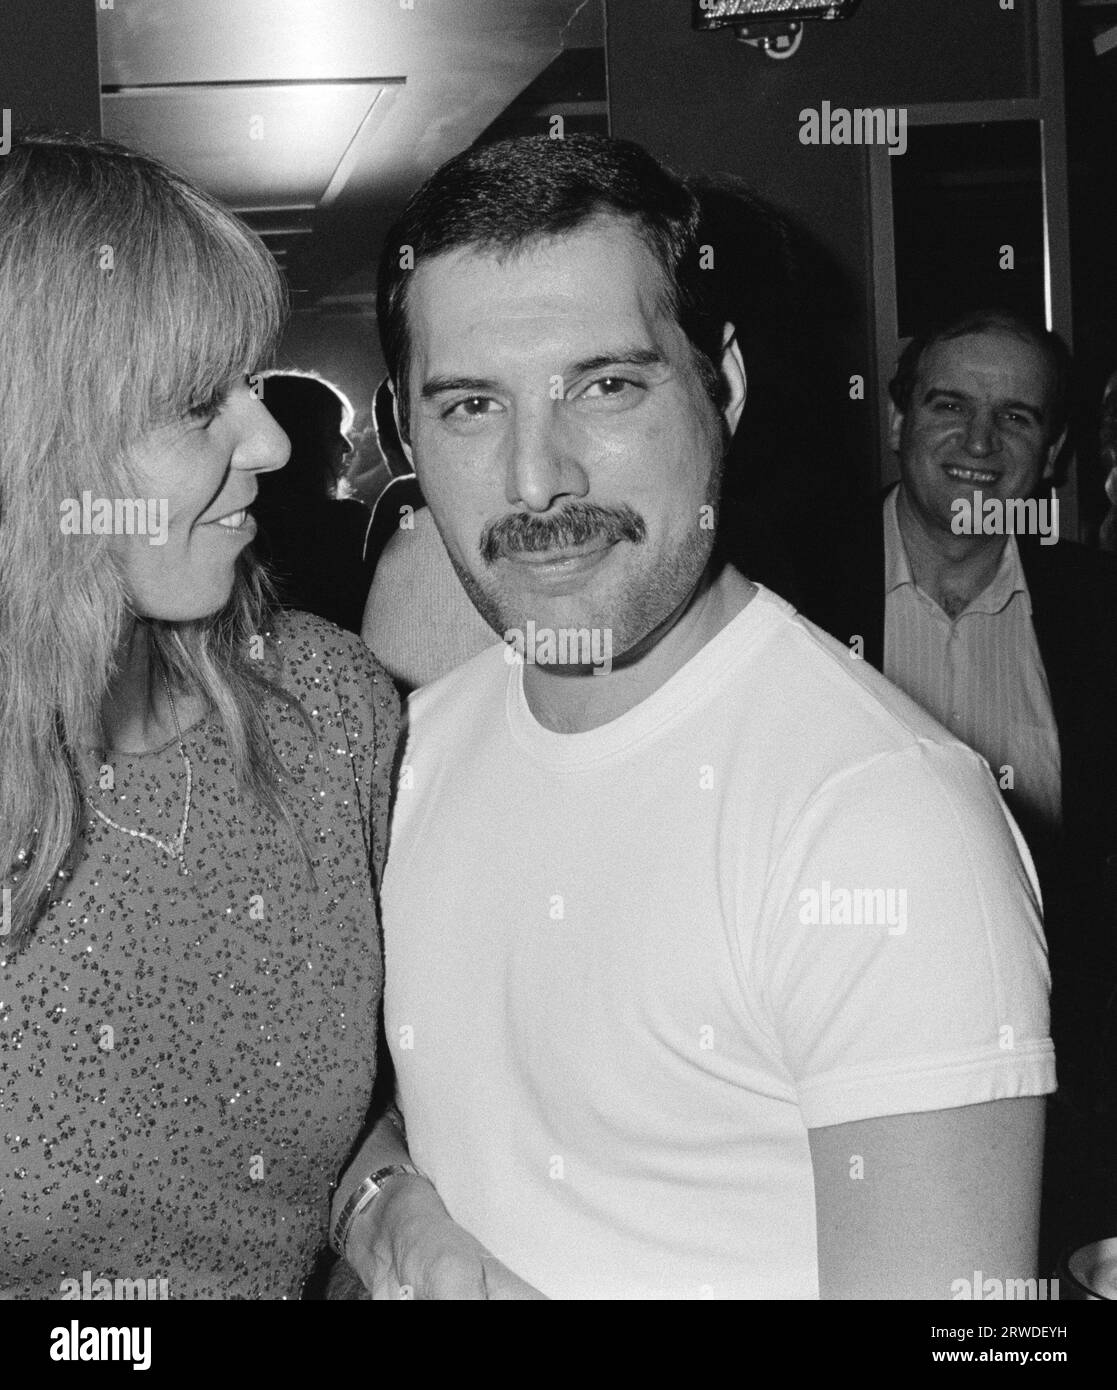 LONDRA, REGNO UNITO. Settembre 1986: La regina star Freddie Mercury e l'amica Mary Austin partecipano a un evento di beneficenza a Londra. Foto del file © Paul Smith/Featureflash Foto Stock